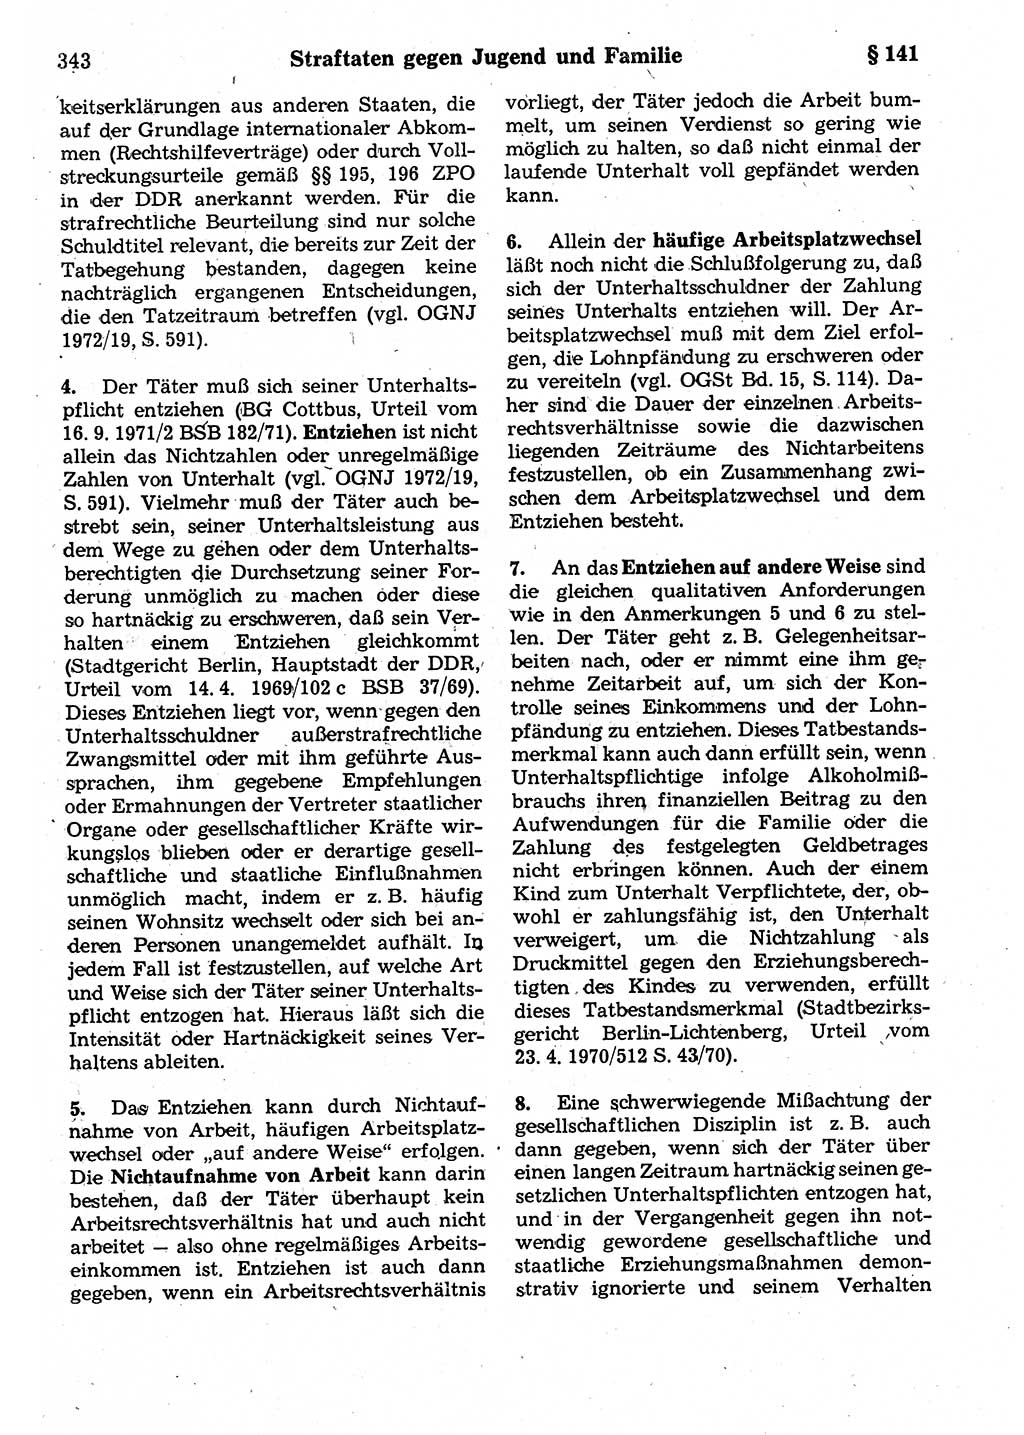 Strafrecht der Deutschen Demokratischen Republik (DDR), Kommentar zum Strafgesetzbuch (StGB) 1987, Seite 343 (Strafr. DDR Komm. StGB 1987, S. 343)